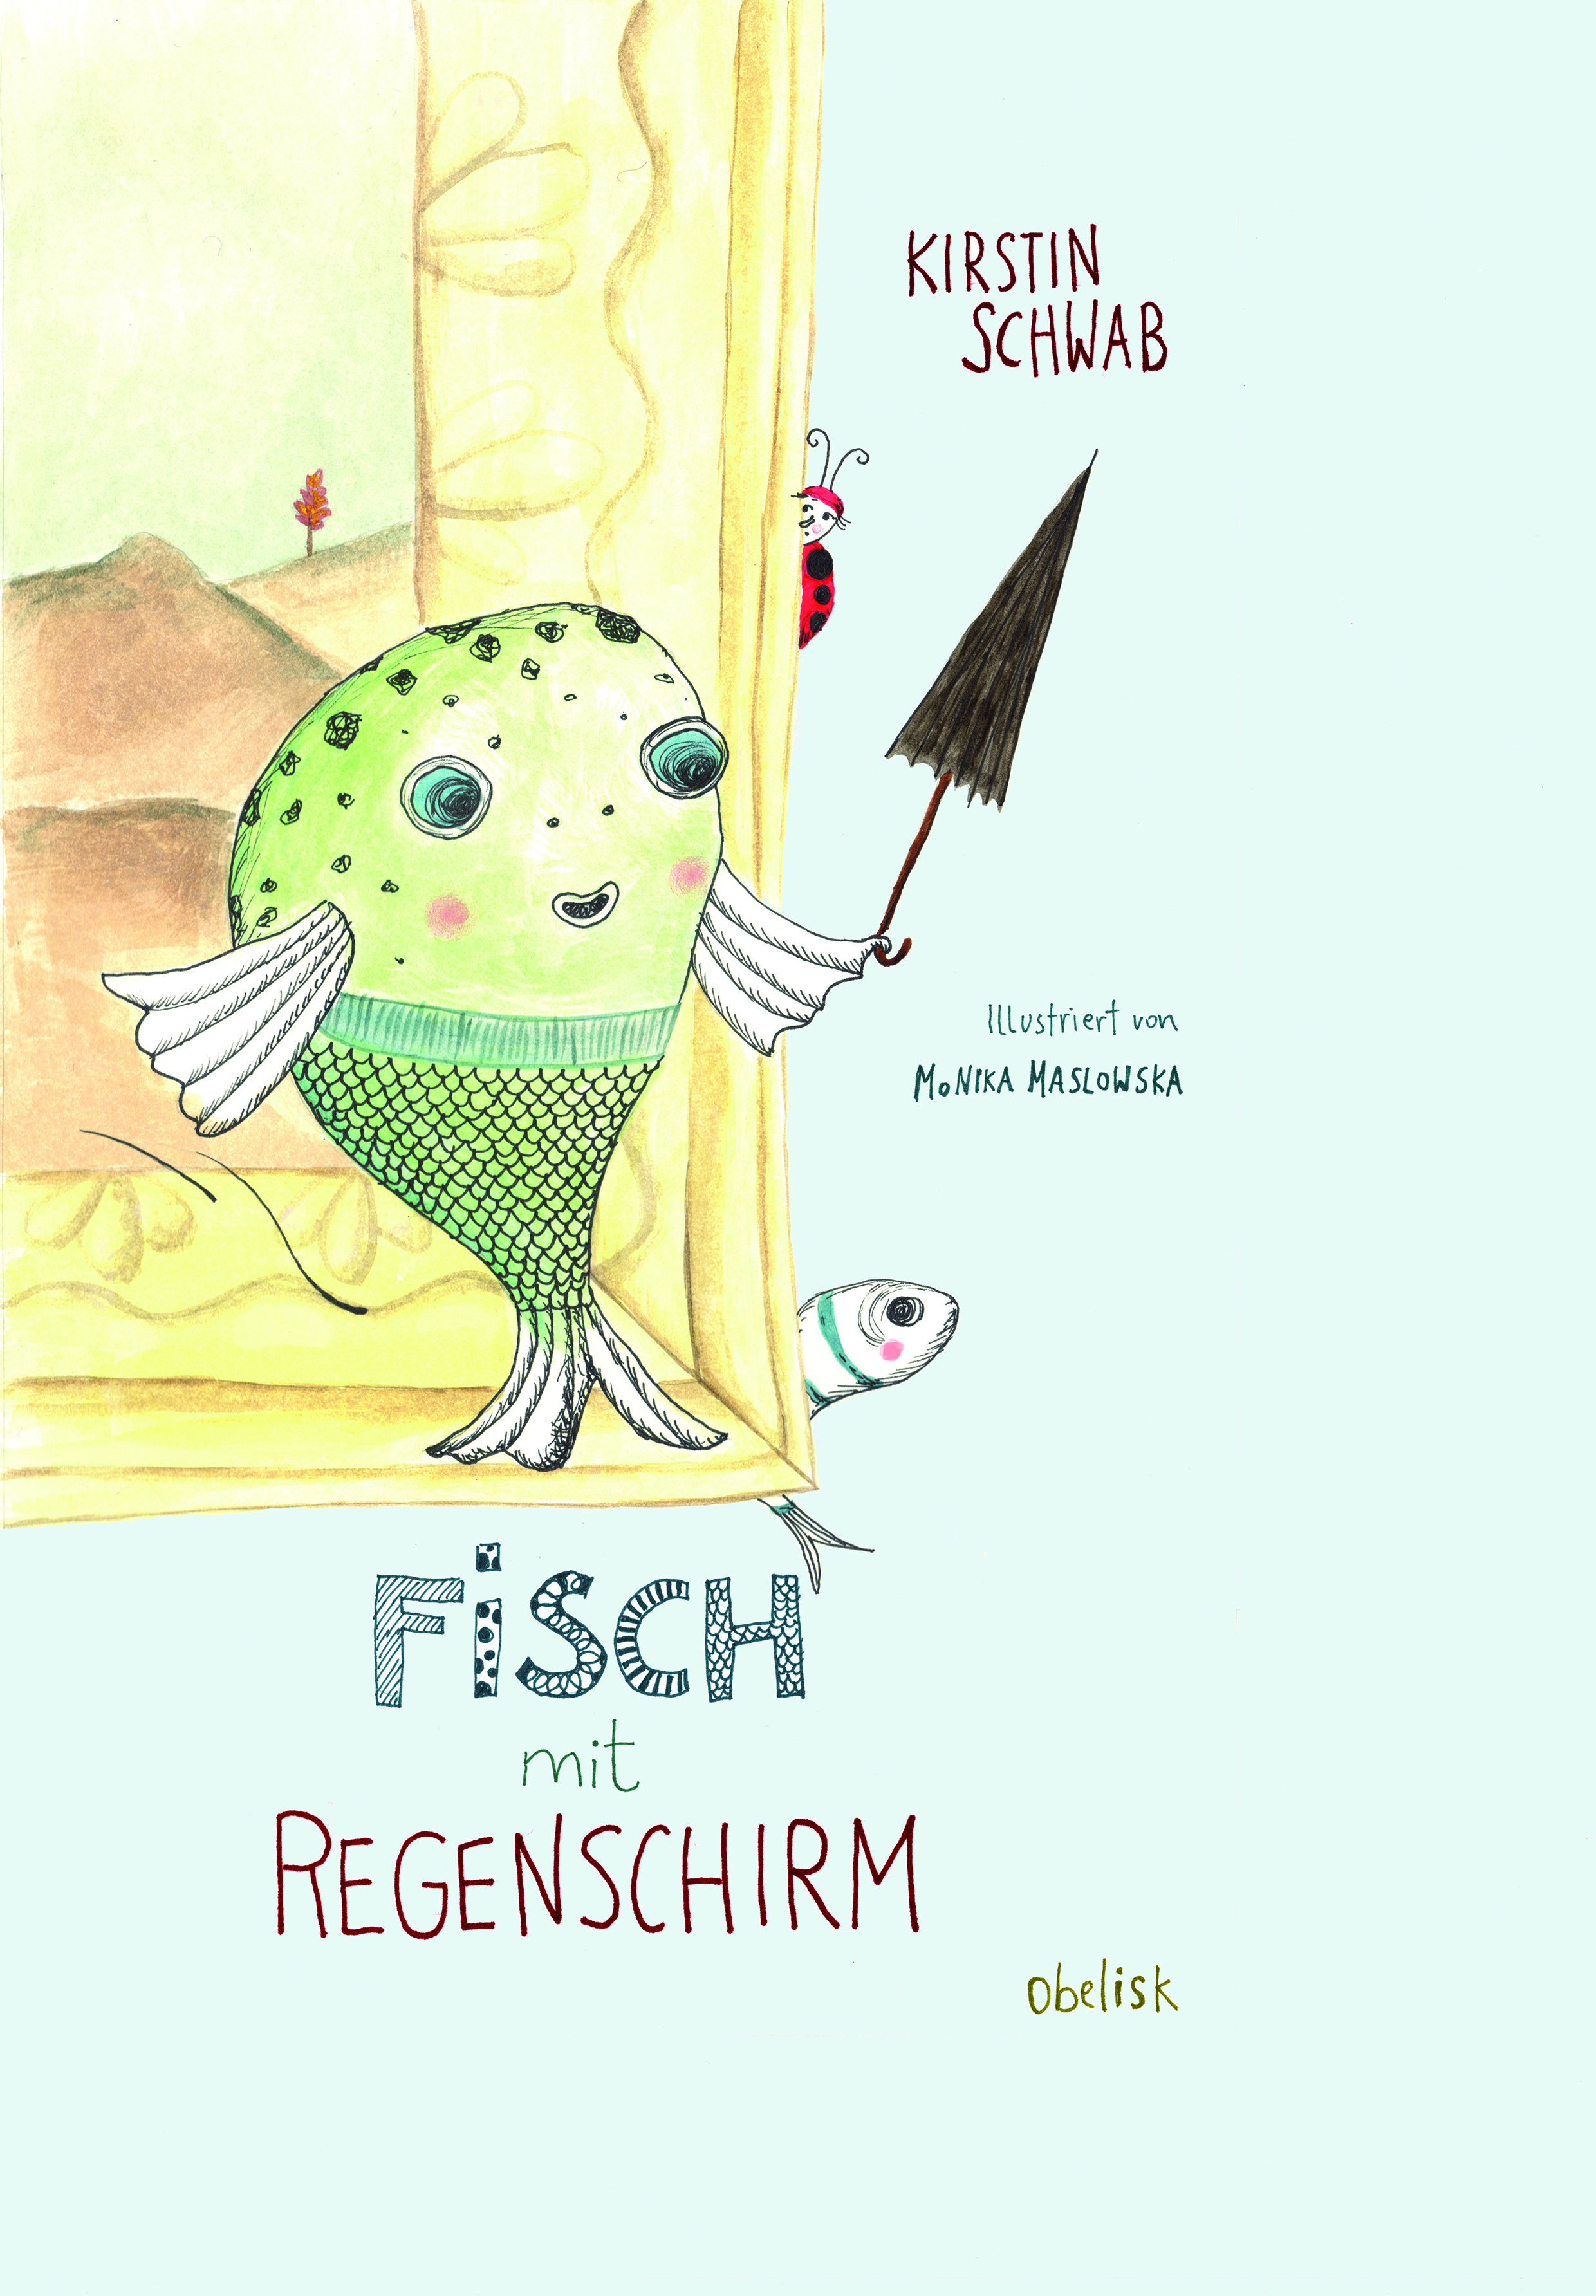 Cover - Kirstin Schwab - Fisch mit Regenschirm - Zeichnung eines Fisches, der inen Regenschirm hält